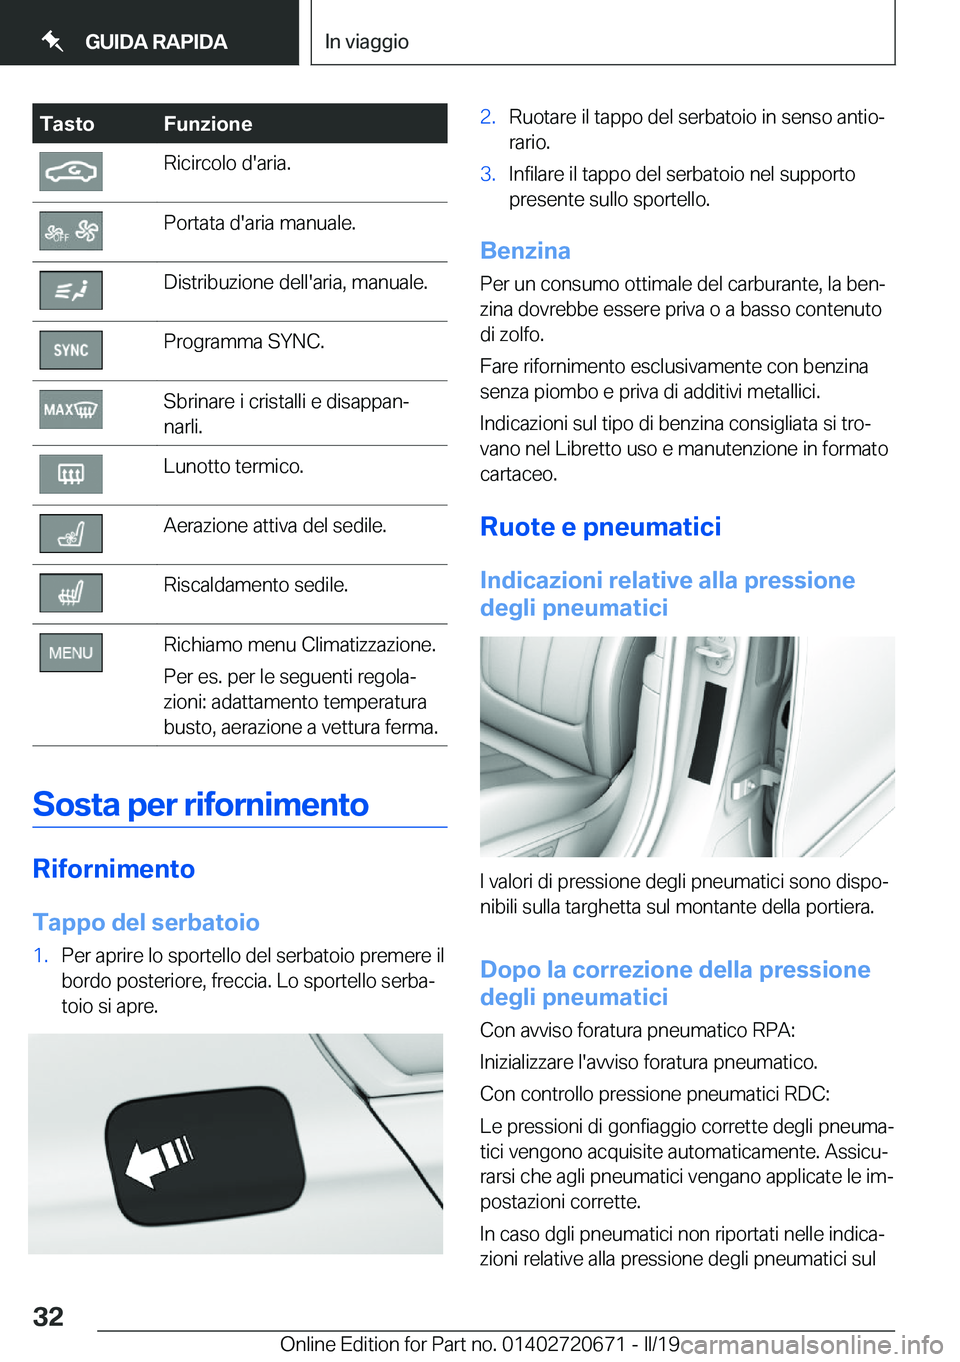 BMW M5 2019  Libretti Di Uso E manutenzione (in Italian) �T�a�s�t�o�F�u�n�z�i�o�n�e�R�i�c�i�r�c�o�l�o��d�'�a�r�i�a�.�P�o�r�t�a�t�a��d�'�a�r�i�a��m�a�n�u�a�l�e�.�D�i�s�t�r�i�b�u�z�i�o�n�e��d�e�l�l�'�a�r�i�a�,��m�a�n�u�a�l�e�.�P�r�o�g�r�a�m�m